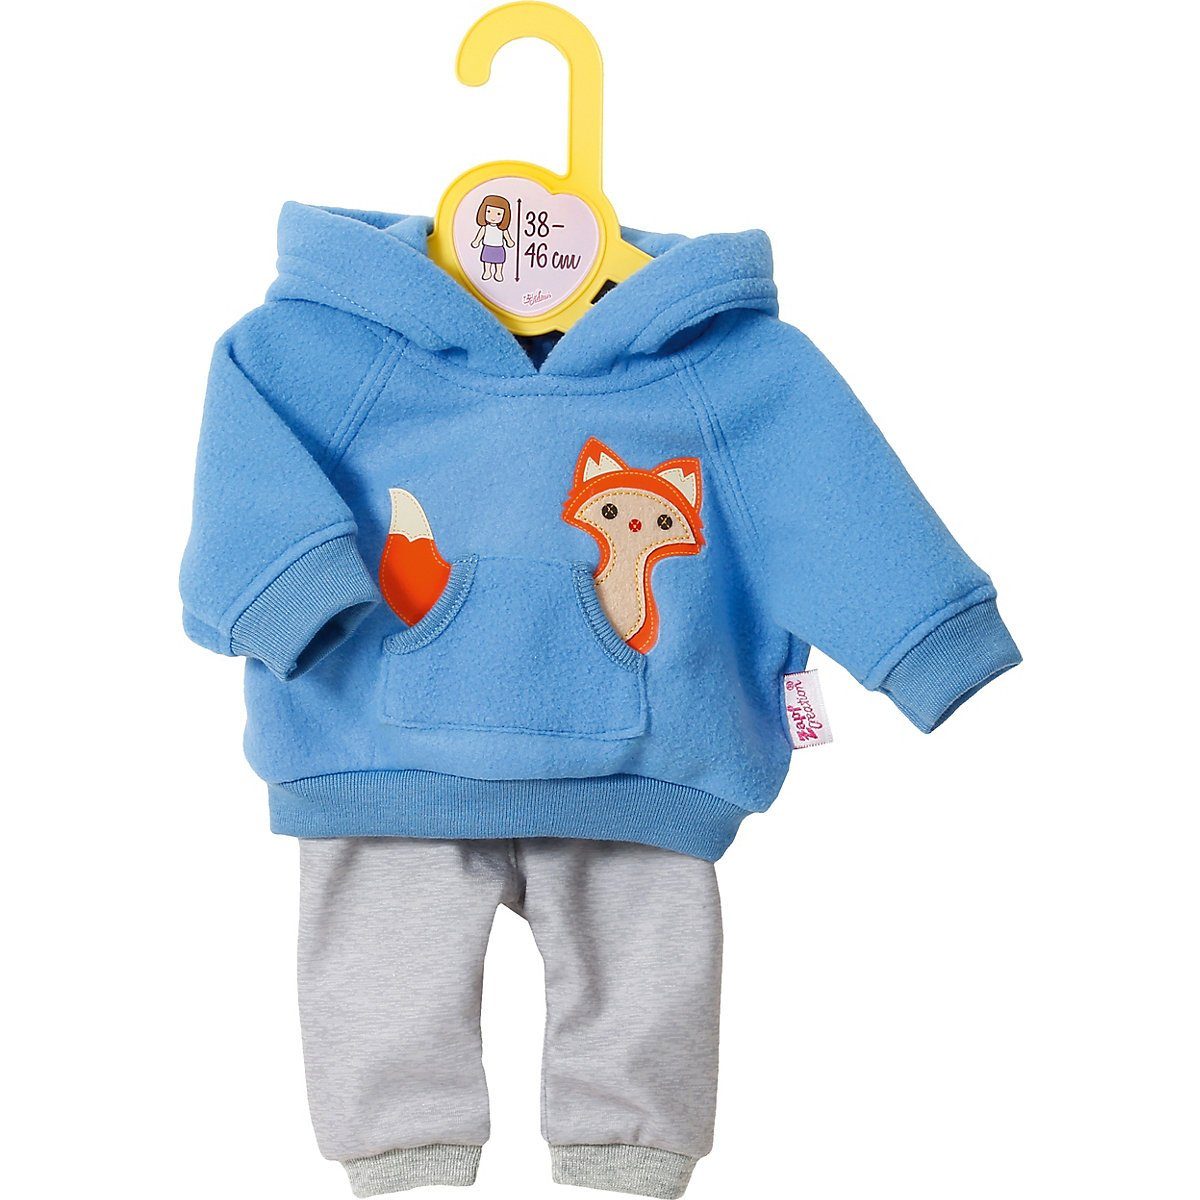 Zapf Creation® Puppenkleidung »Dolly Moda Sport-Outfit Pink Eichhörnchen  34-38 cm« online kaufen | OTTO